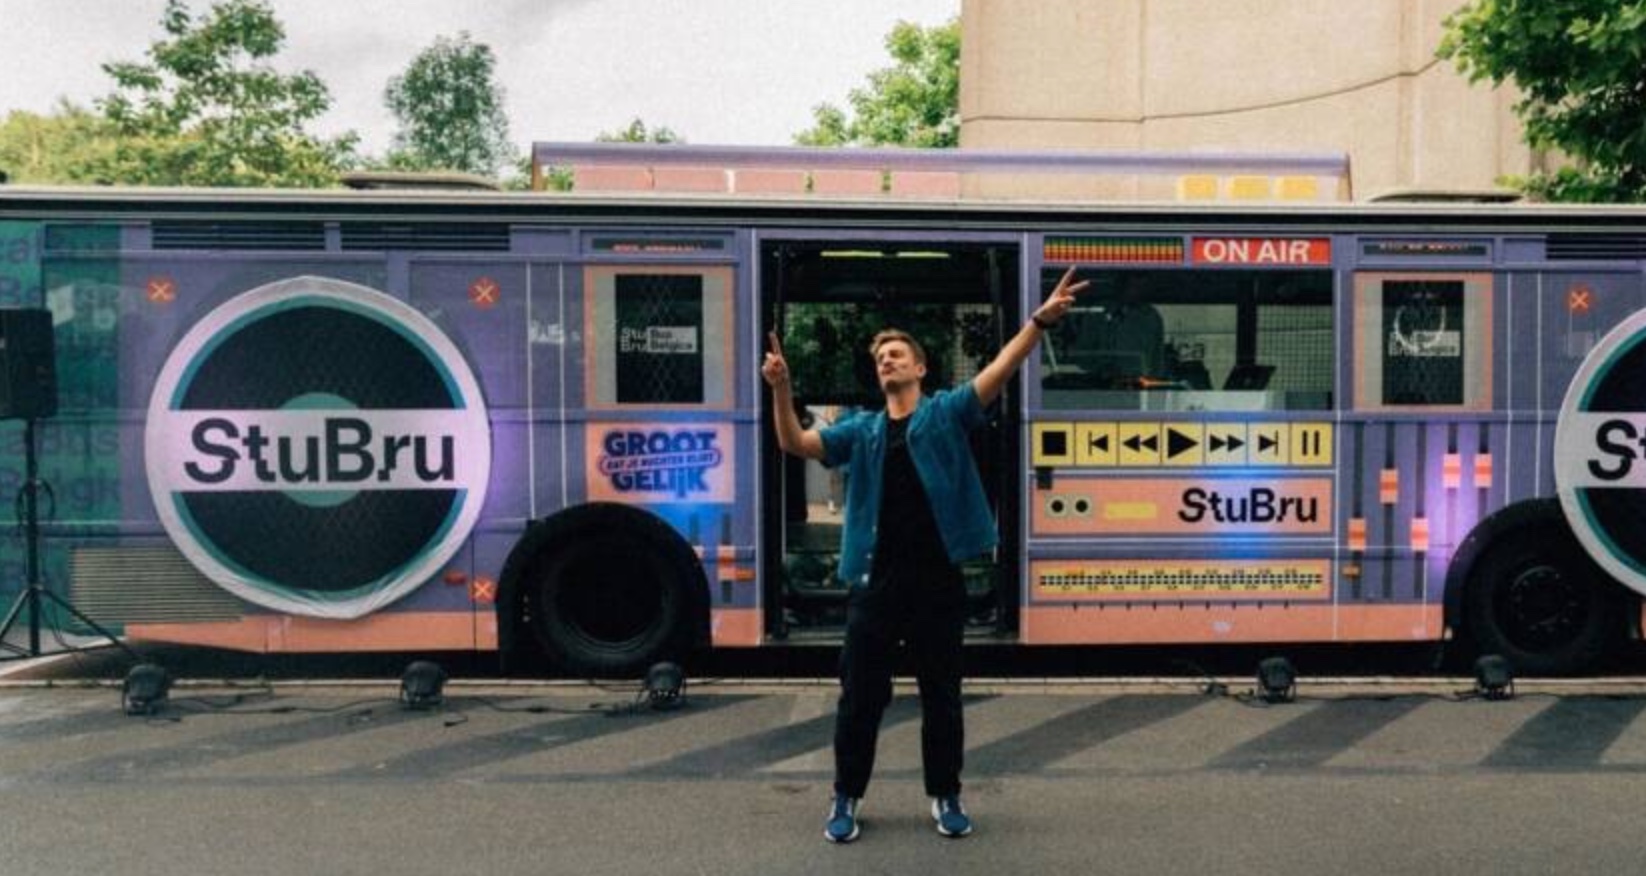 Le Bus Belgica de StuBru est le compagnon de festival de Samsung, VSV, De Lijn et Telenet